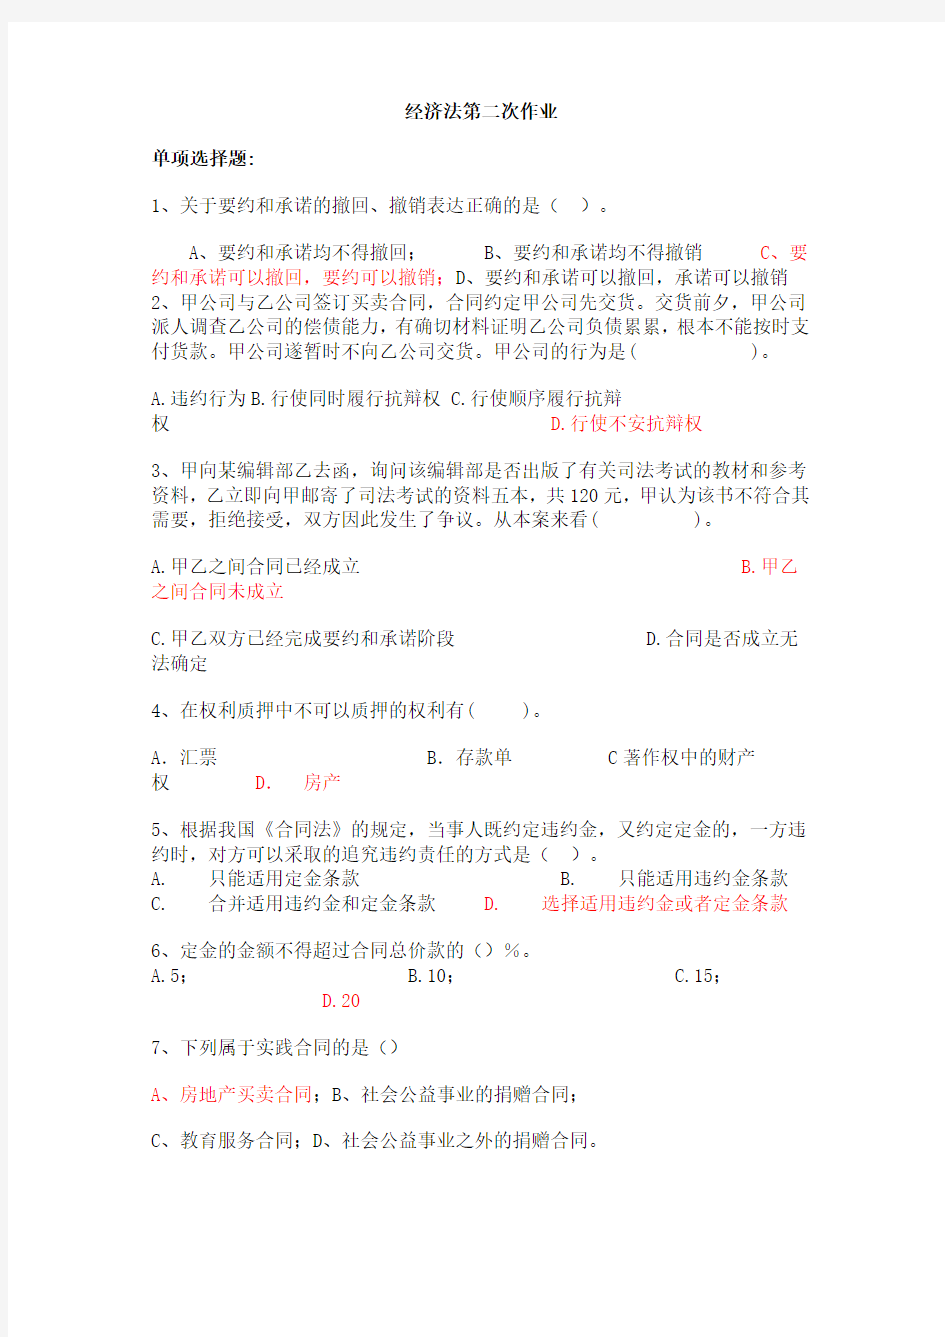 上海交大经济法第二次作业